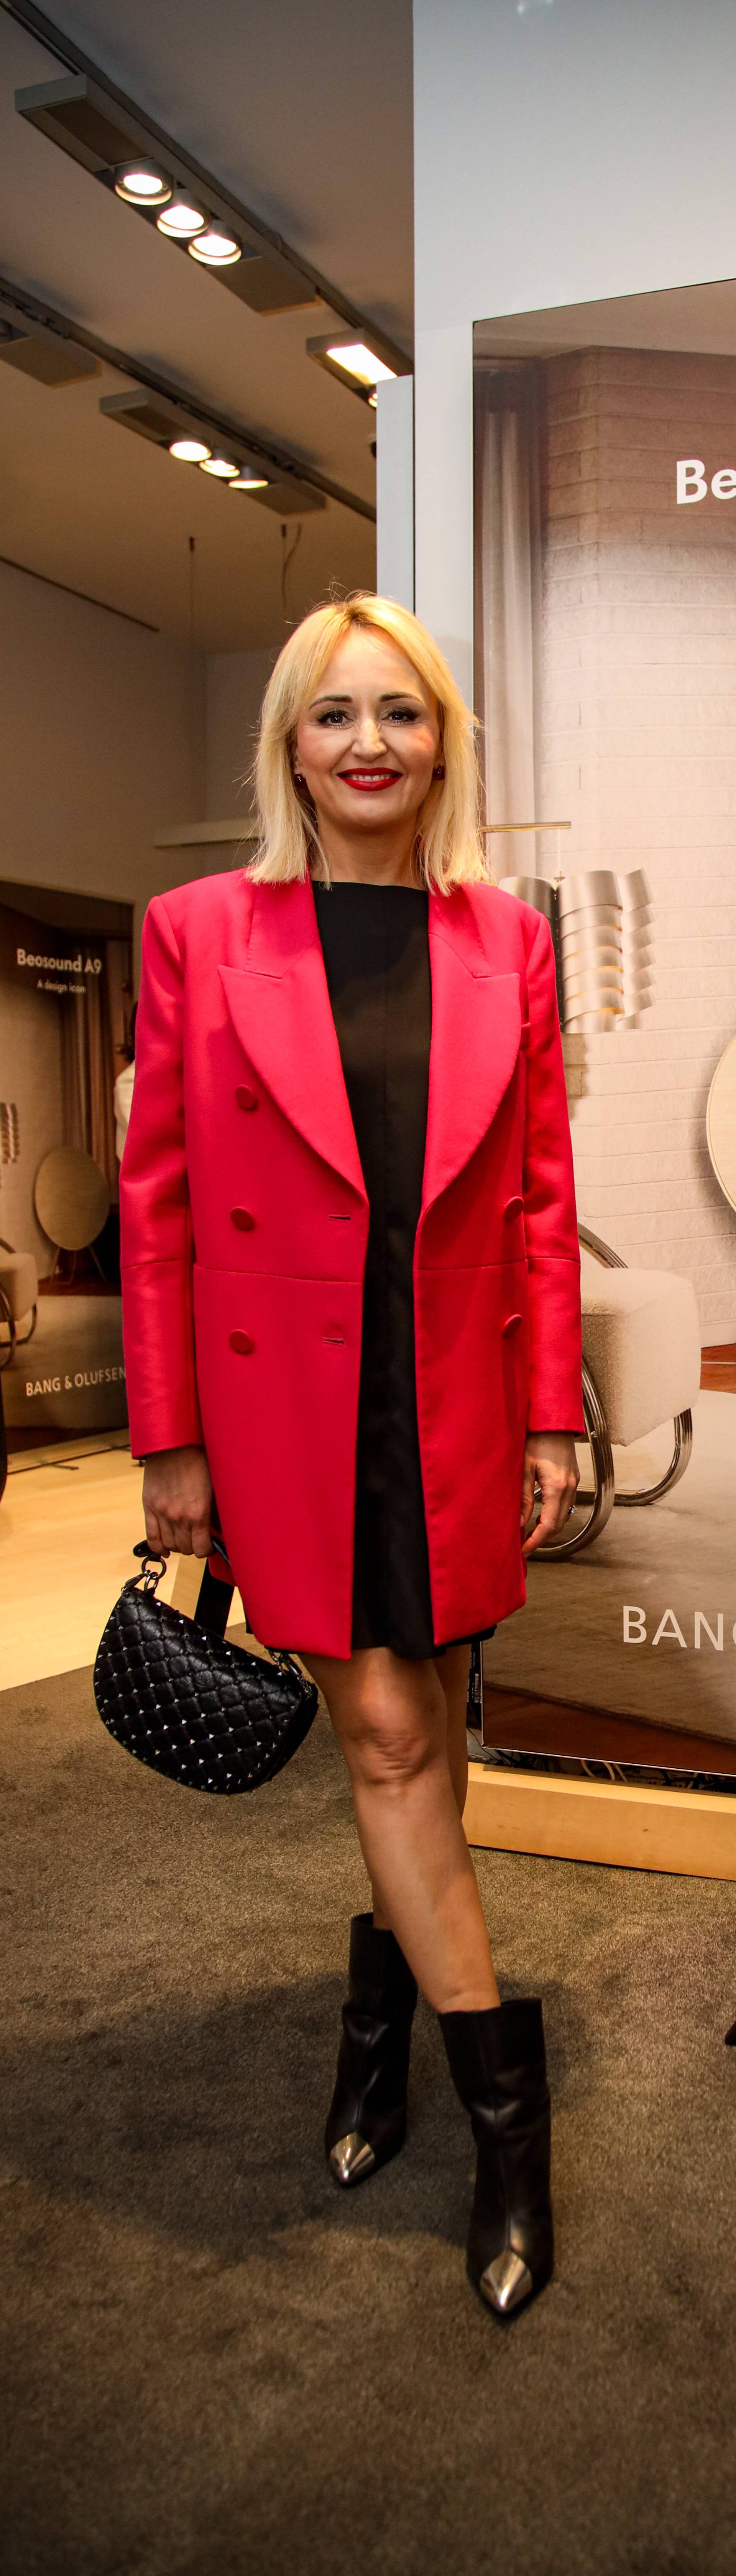 Bang & Olufsen predstavio nove premium zvučnike i okupio brojna poznata lica